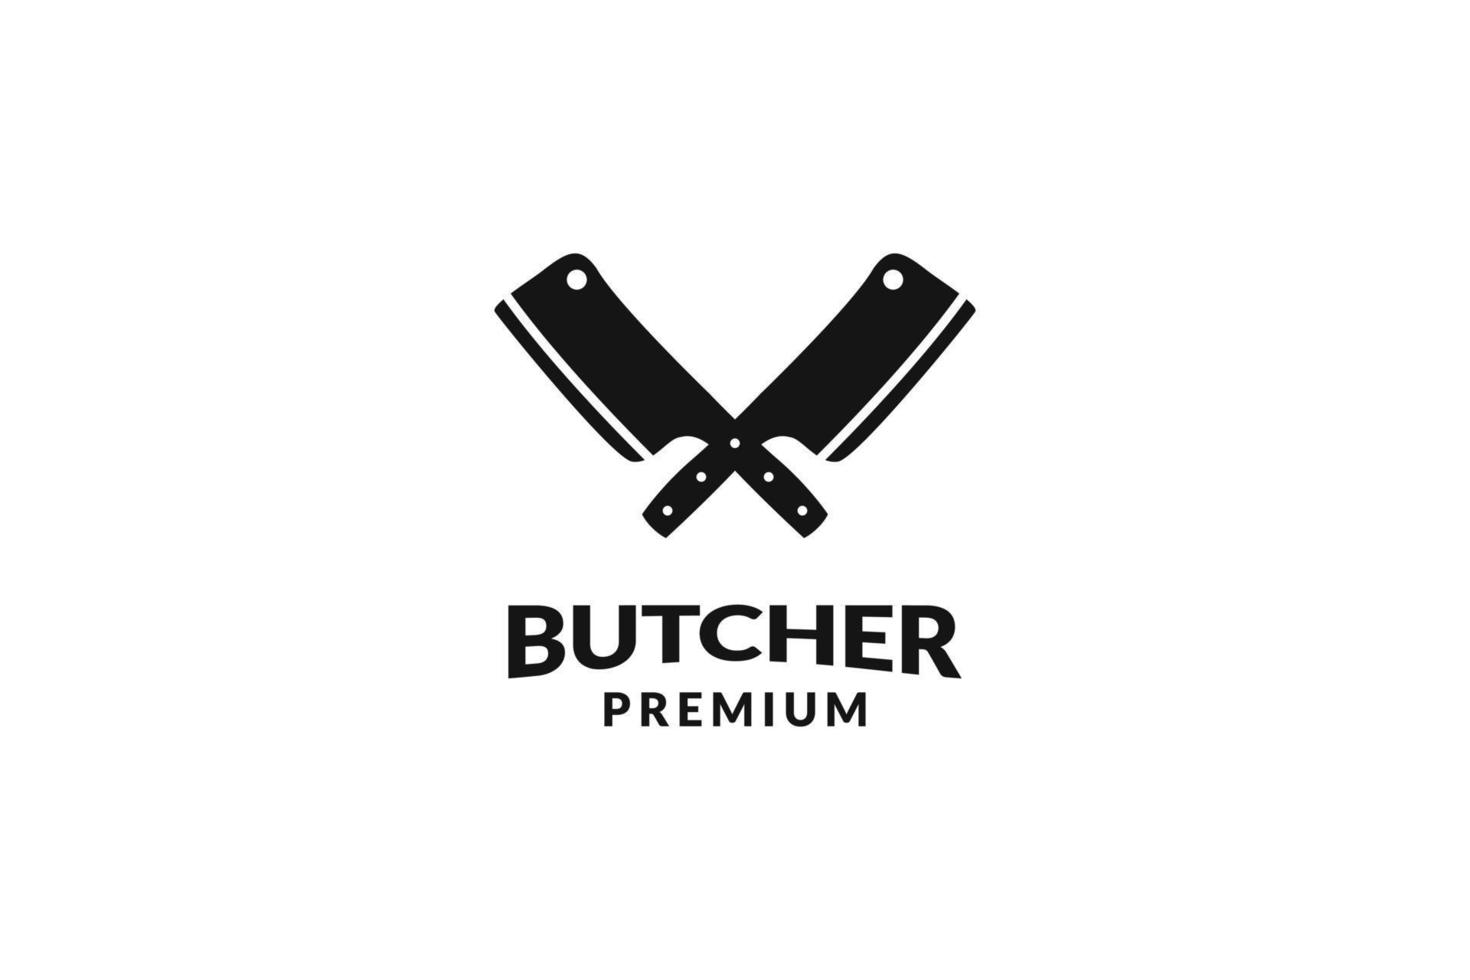 Flat butcher knife logo design vector template illustration